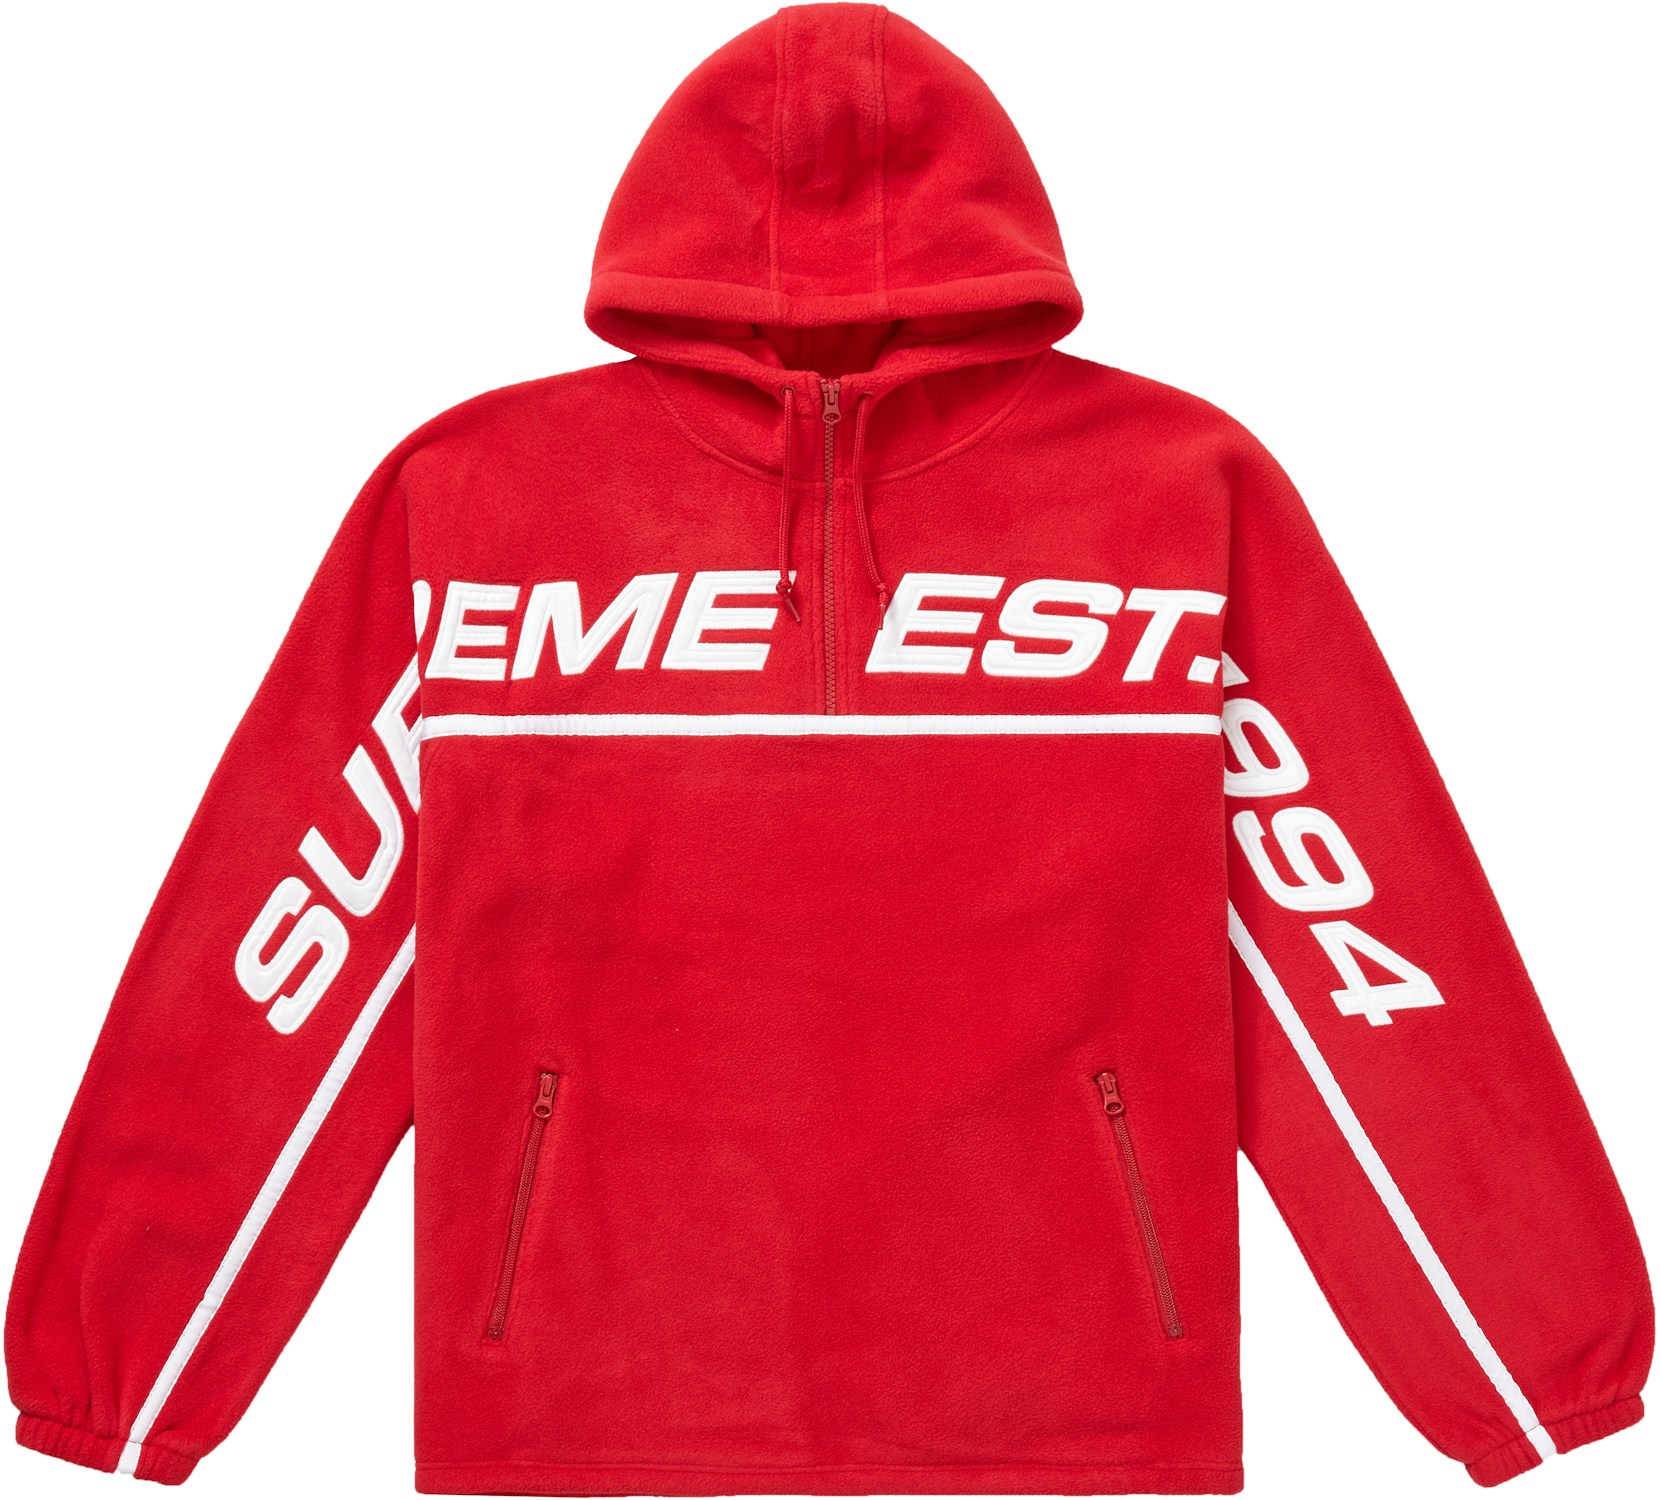 Supreme Polartec Half Zip Hooded Sweatshirt Red - FW19